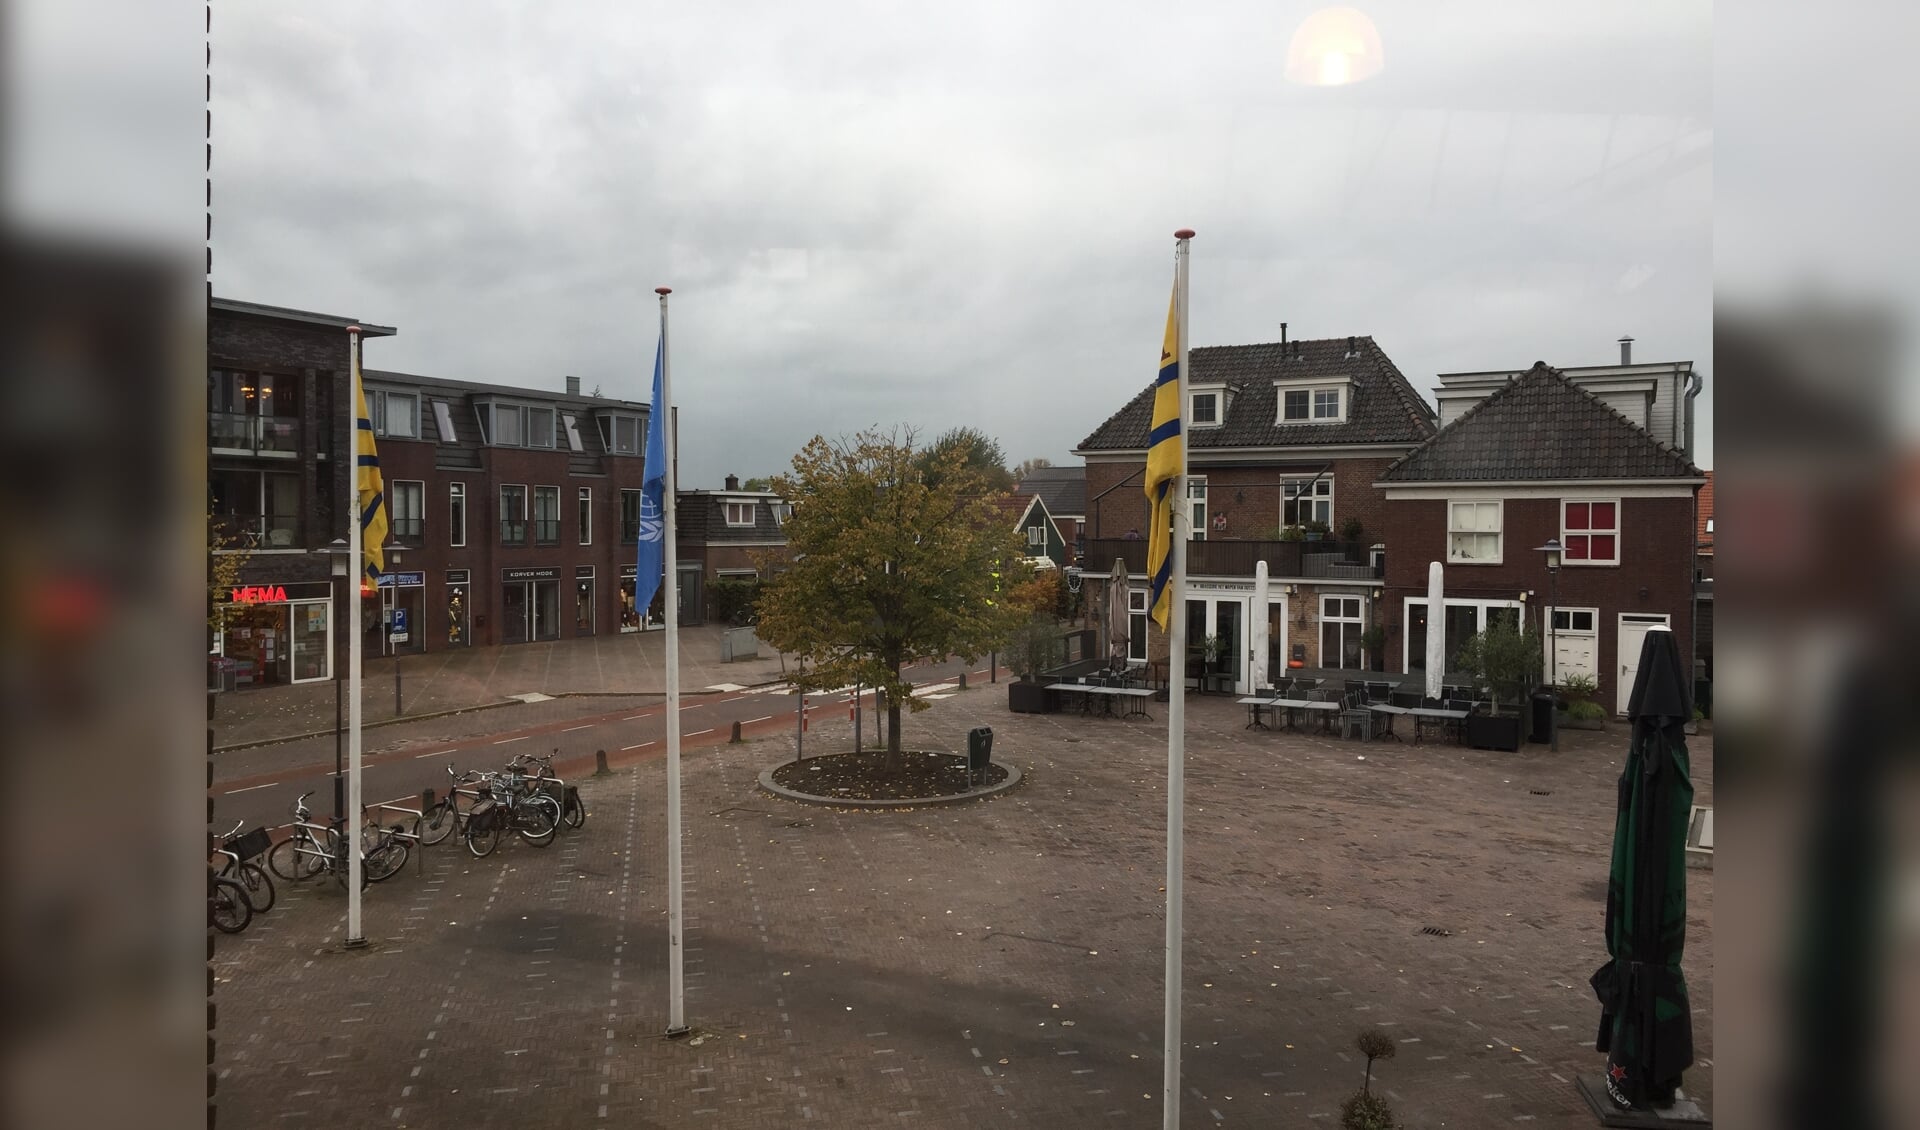 De VN-vlag wappert in Oostzaan - als er genoeg wind staat.